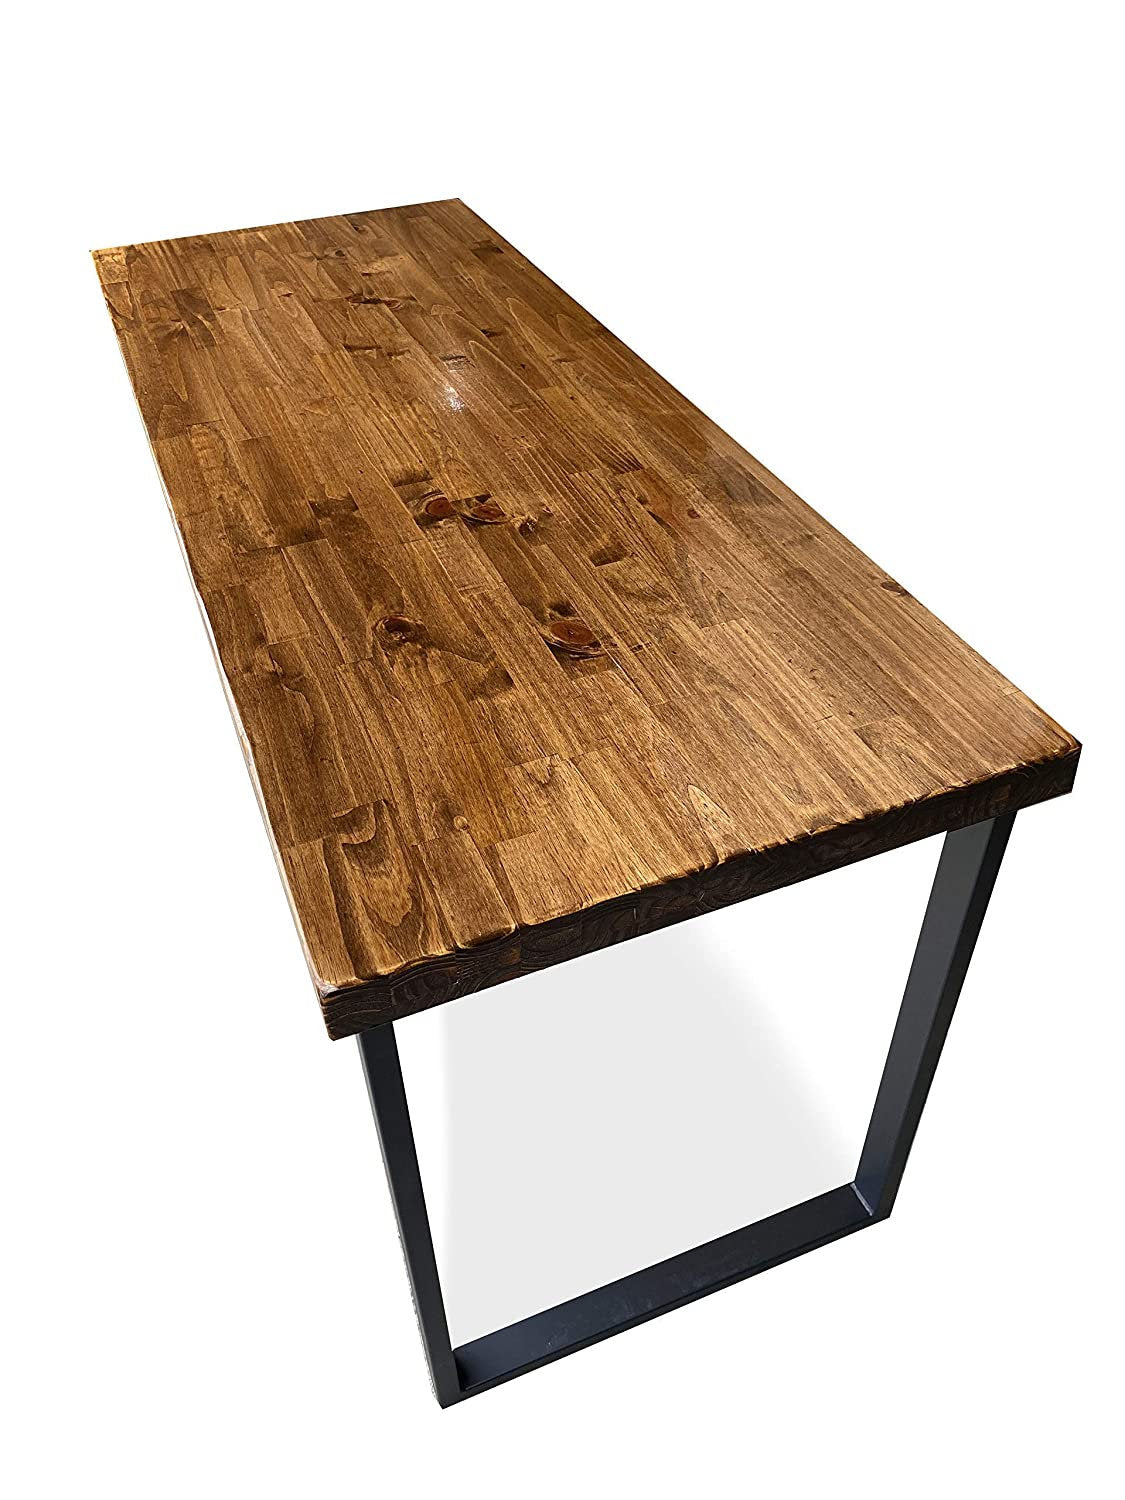 SALE! Reclaimed Wood & Steel Desk - Wood Office Desk - Desk